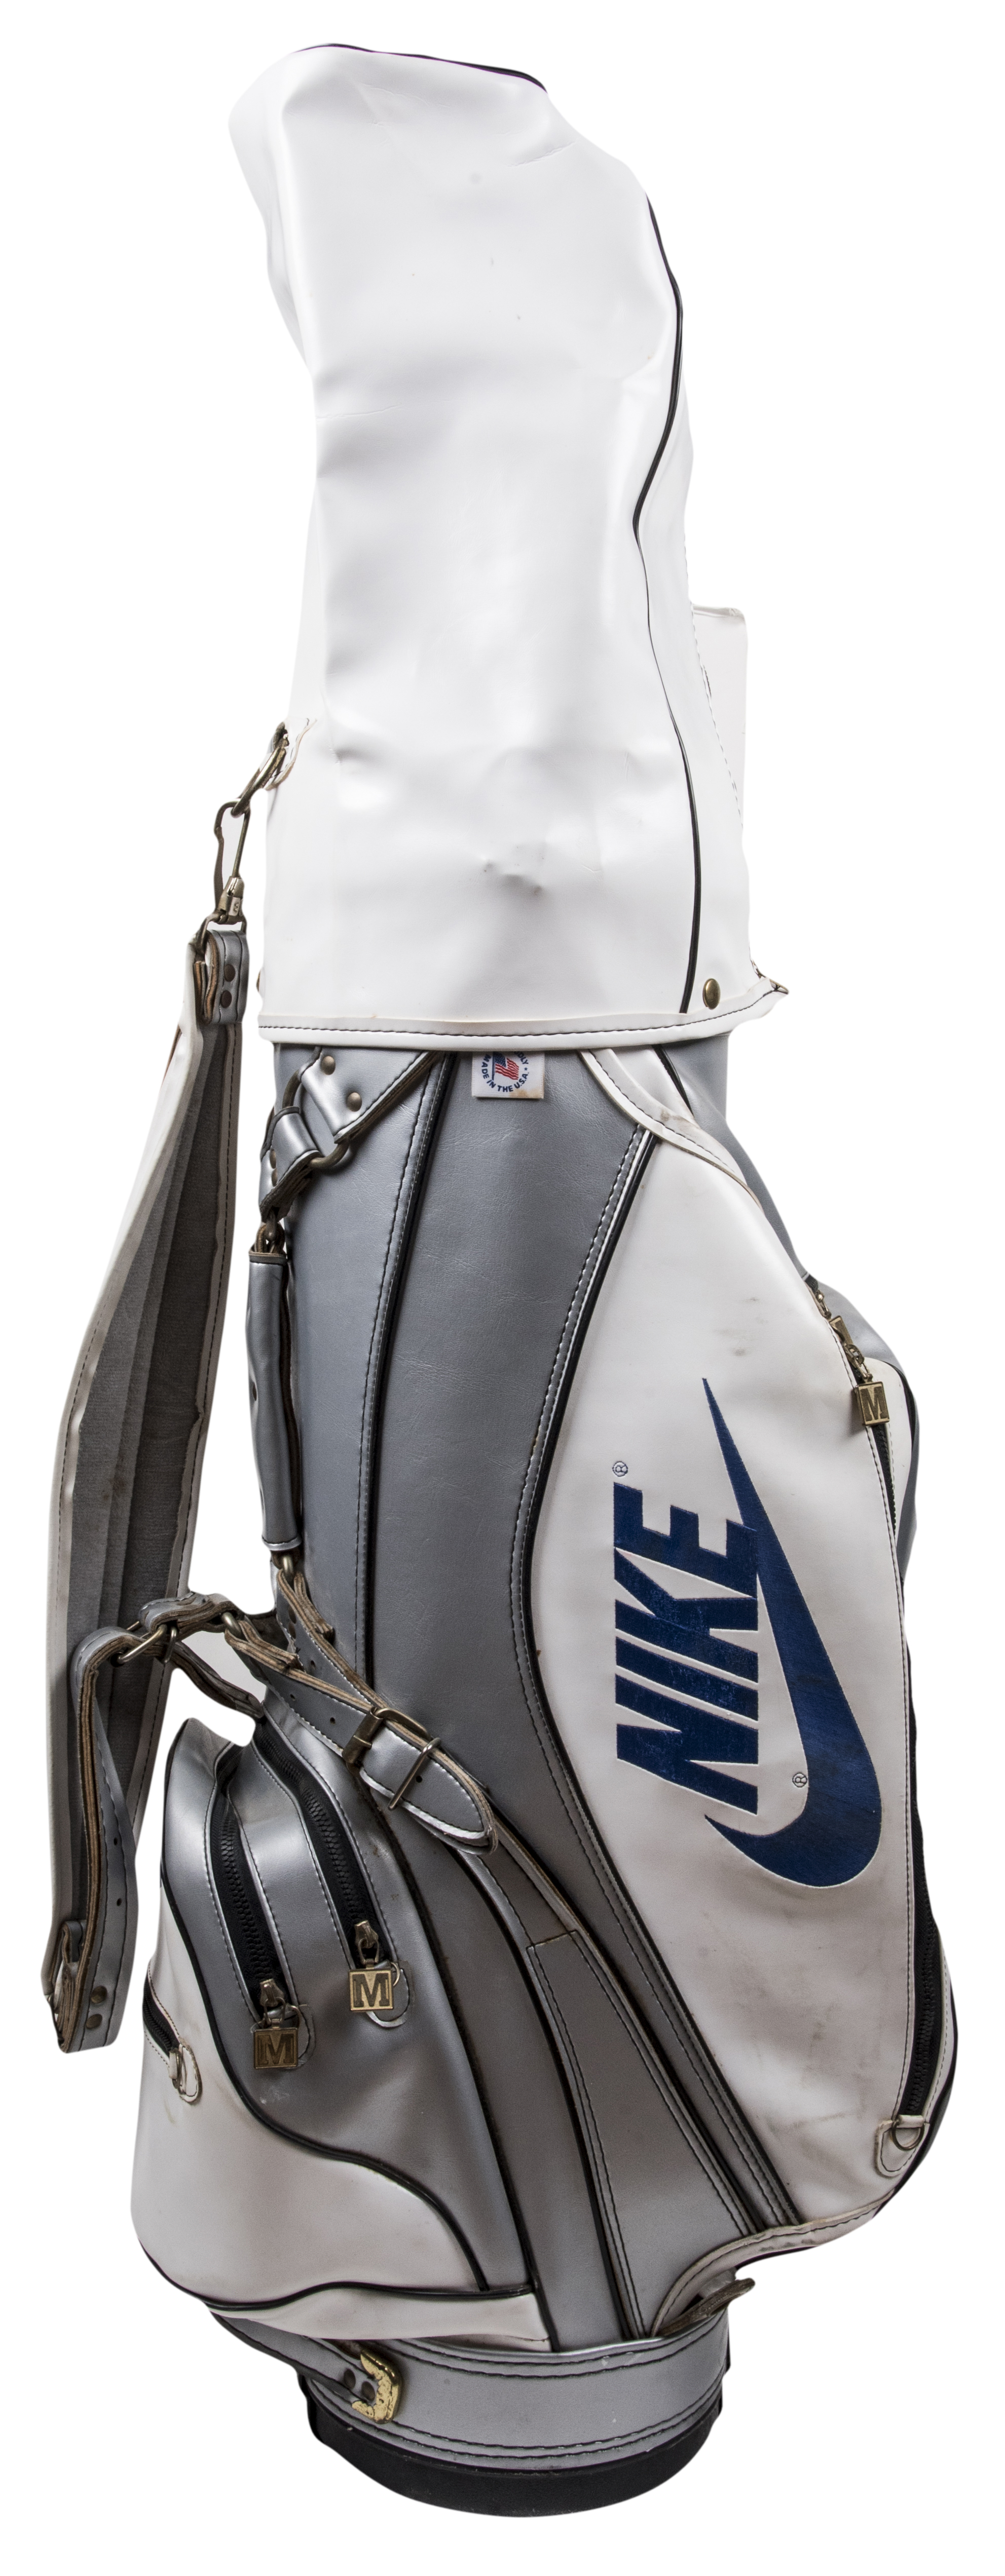 Lot Detail - Michael Jordan's Personal Nike Golf Bag